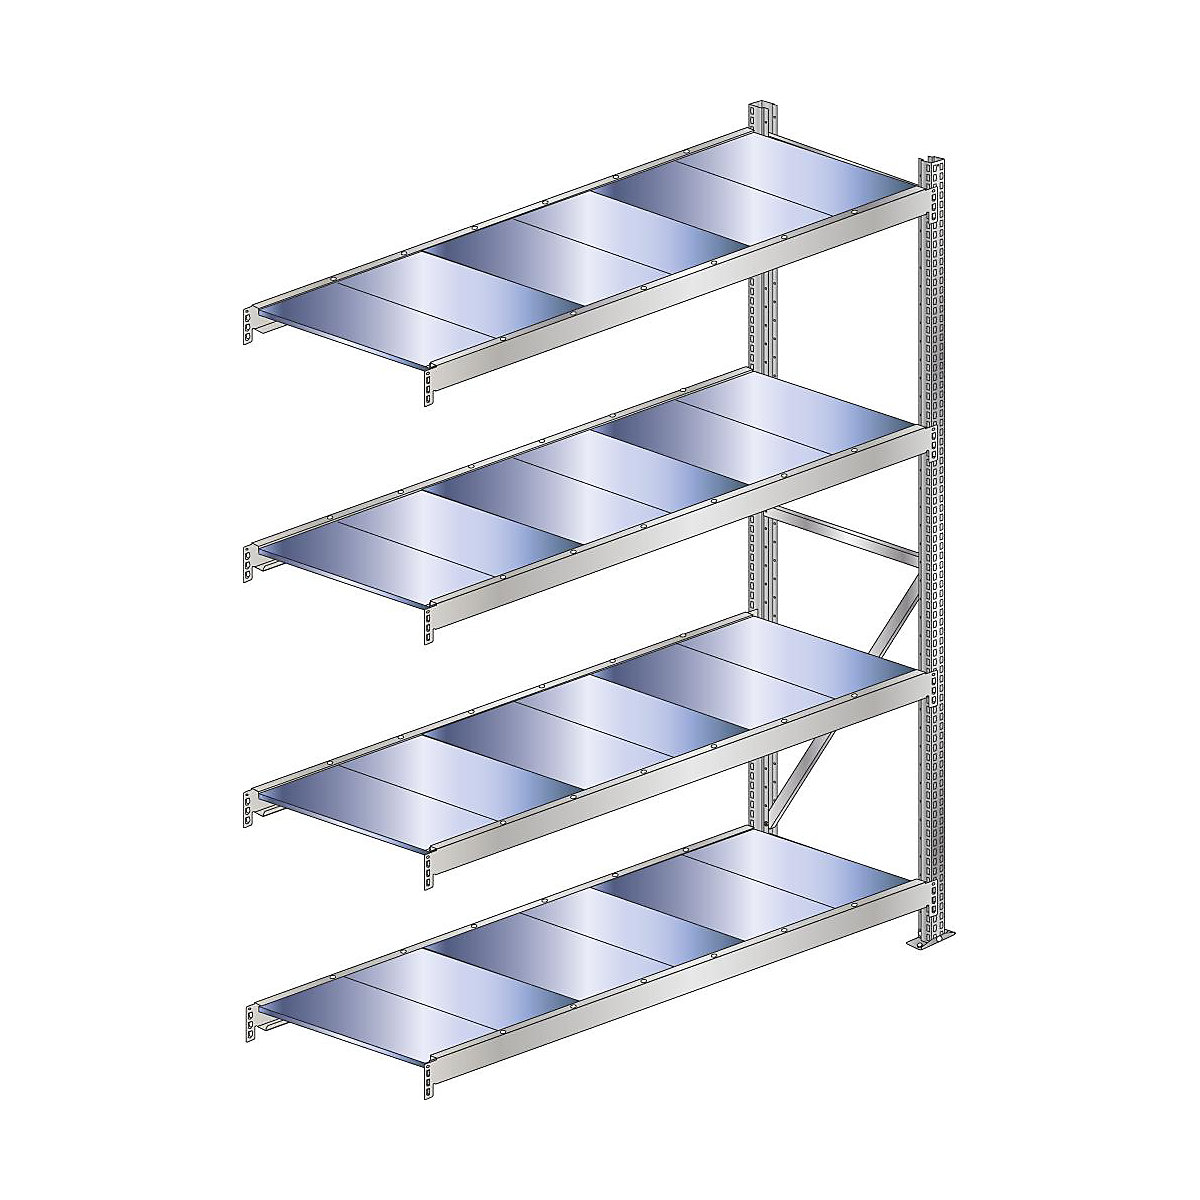 Wide span shelf unit, shelf load 500 kg – SCHULTE, shelf width 1500 mm, extension shelf unit, height 2500 mm, depth 500 mm